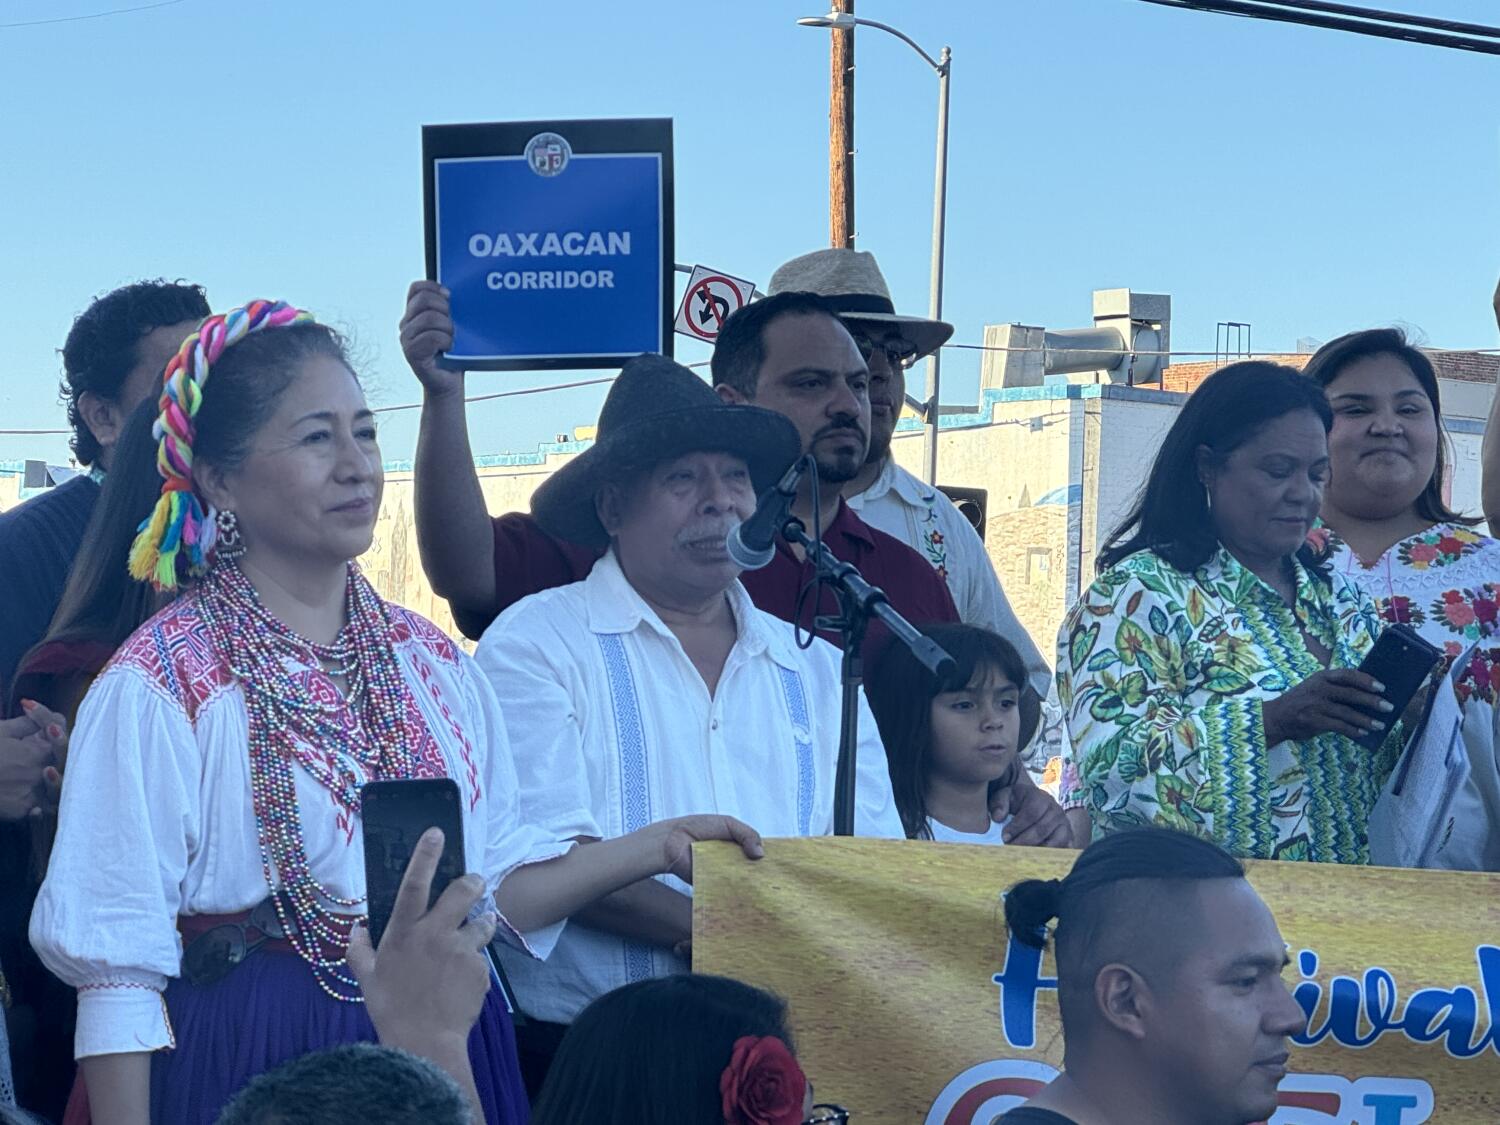 Angelinos celebran la designación del Corredor Oaxaqueño, un vibrante enclave étnico en el boulevard Pico 